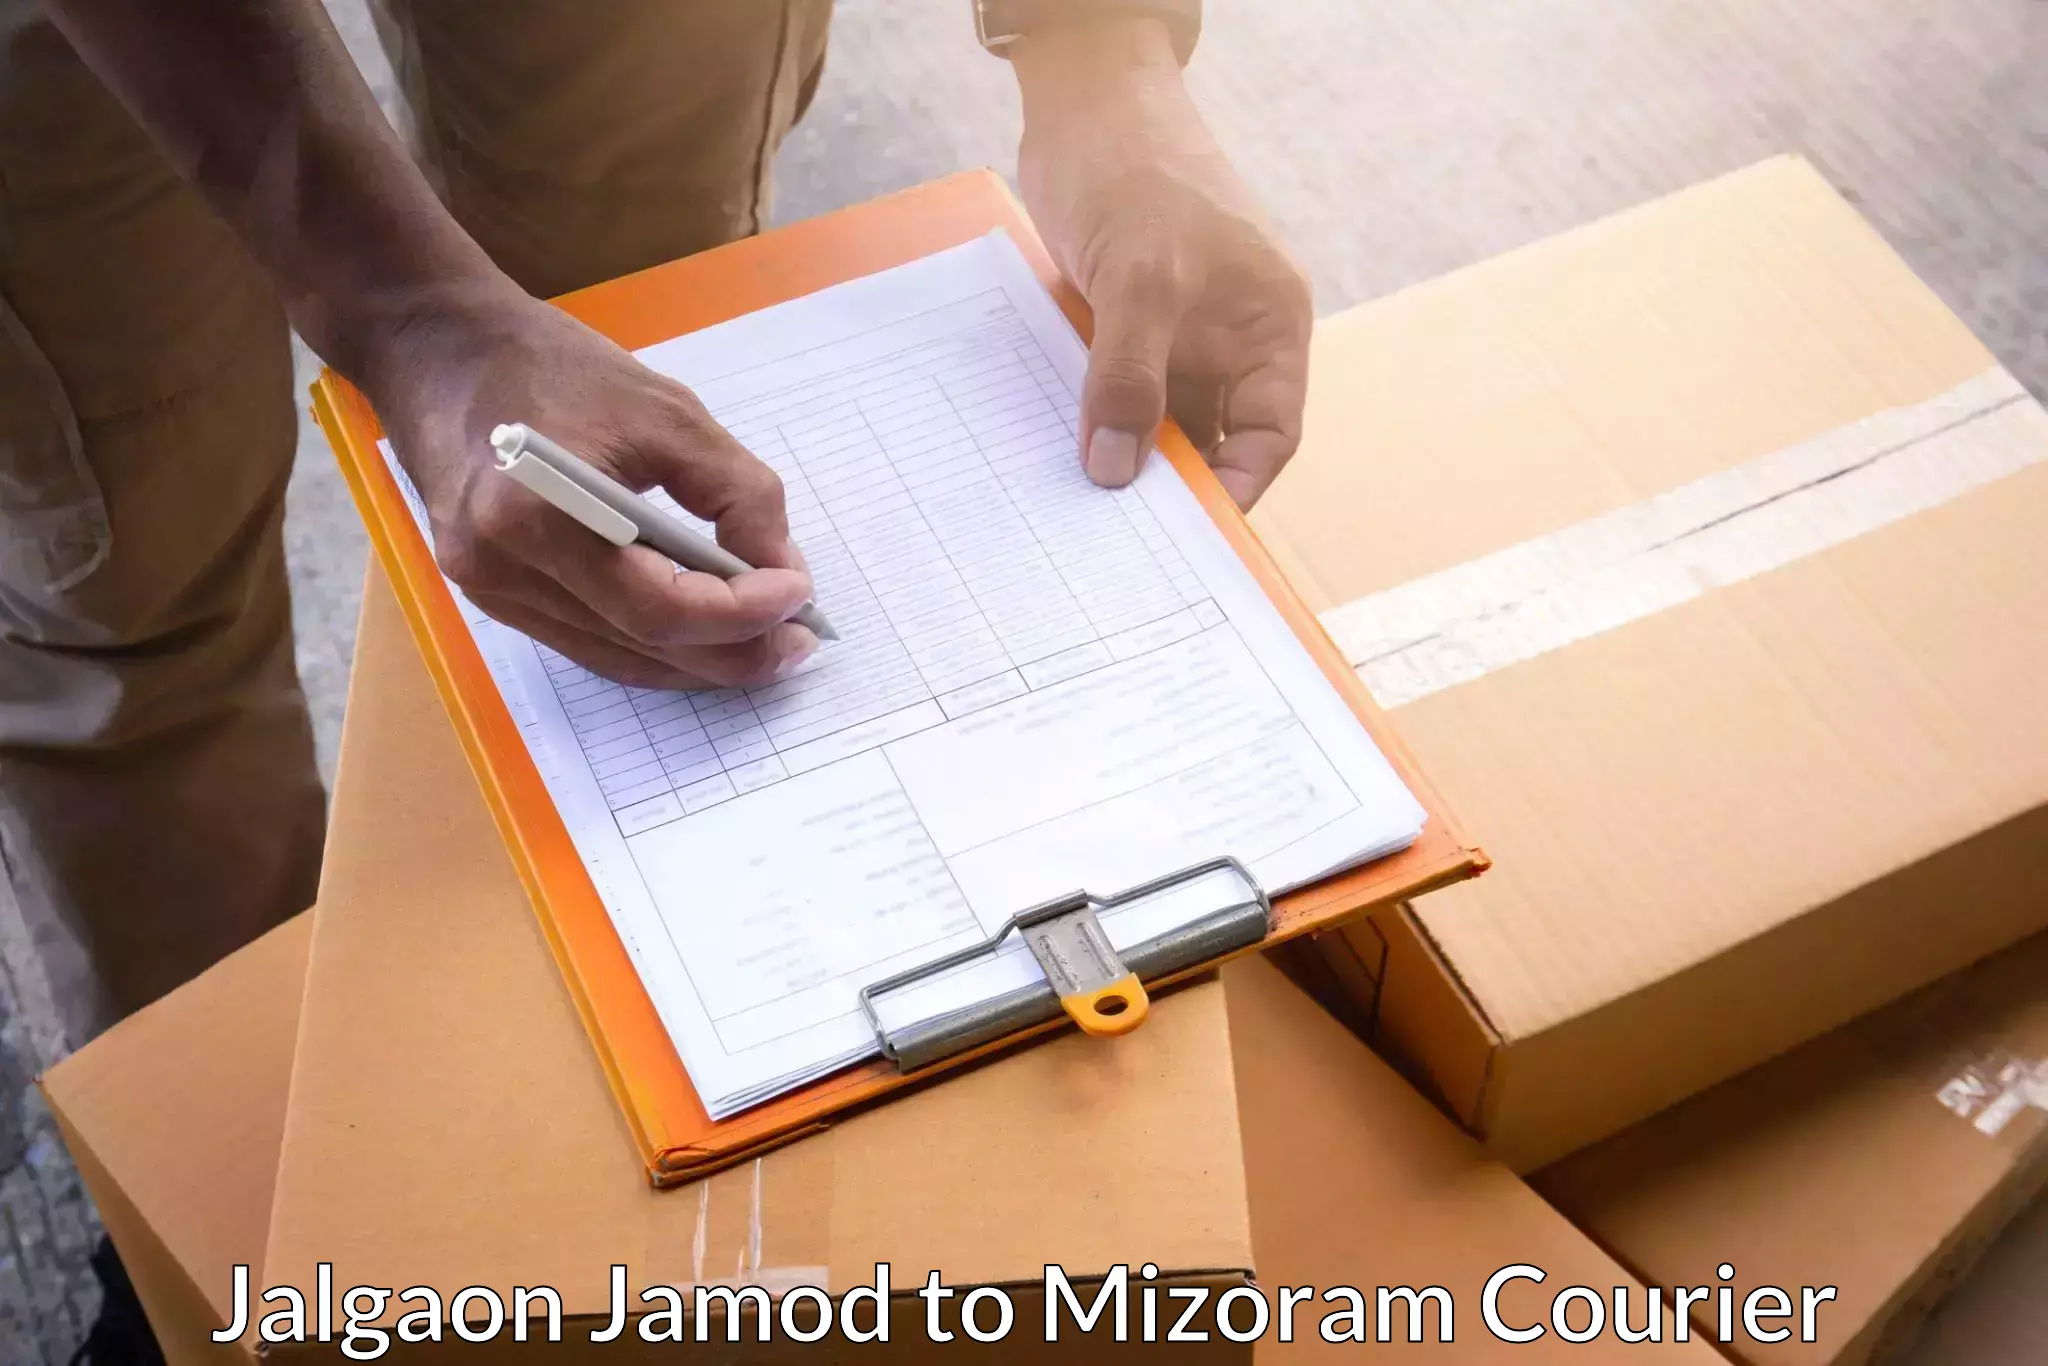 24-hour courier service Jalgaon Jamod to Khawzawl